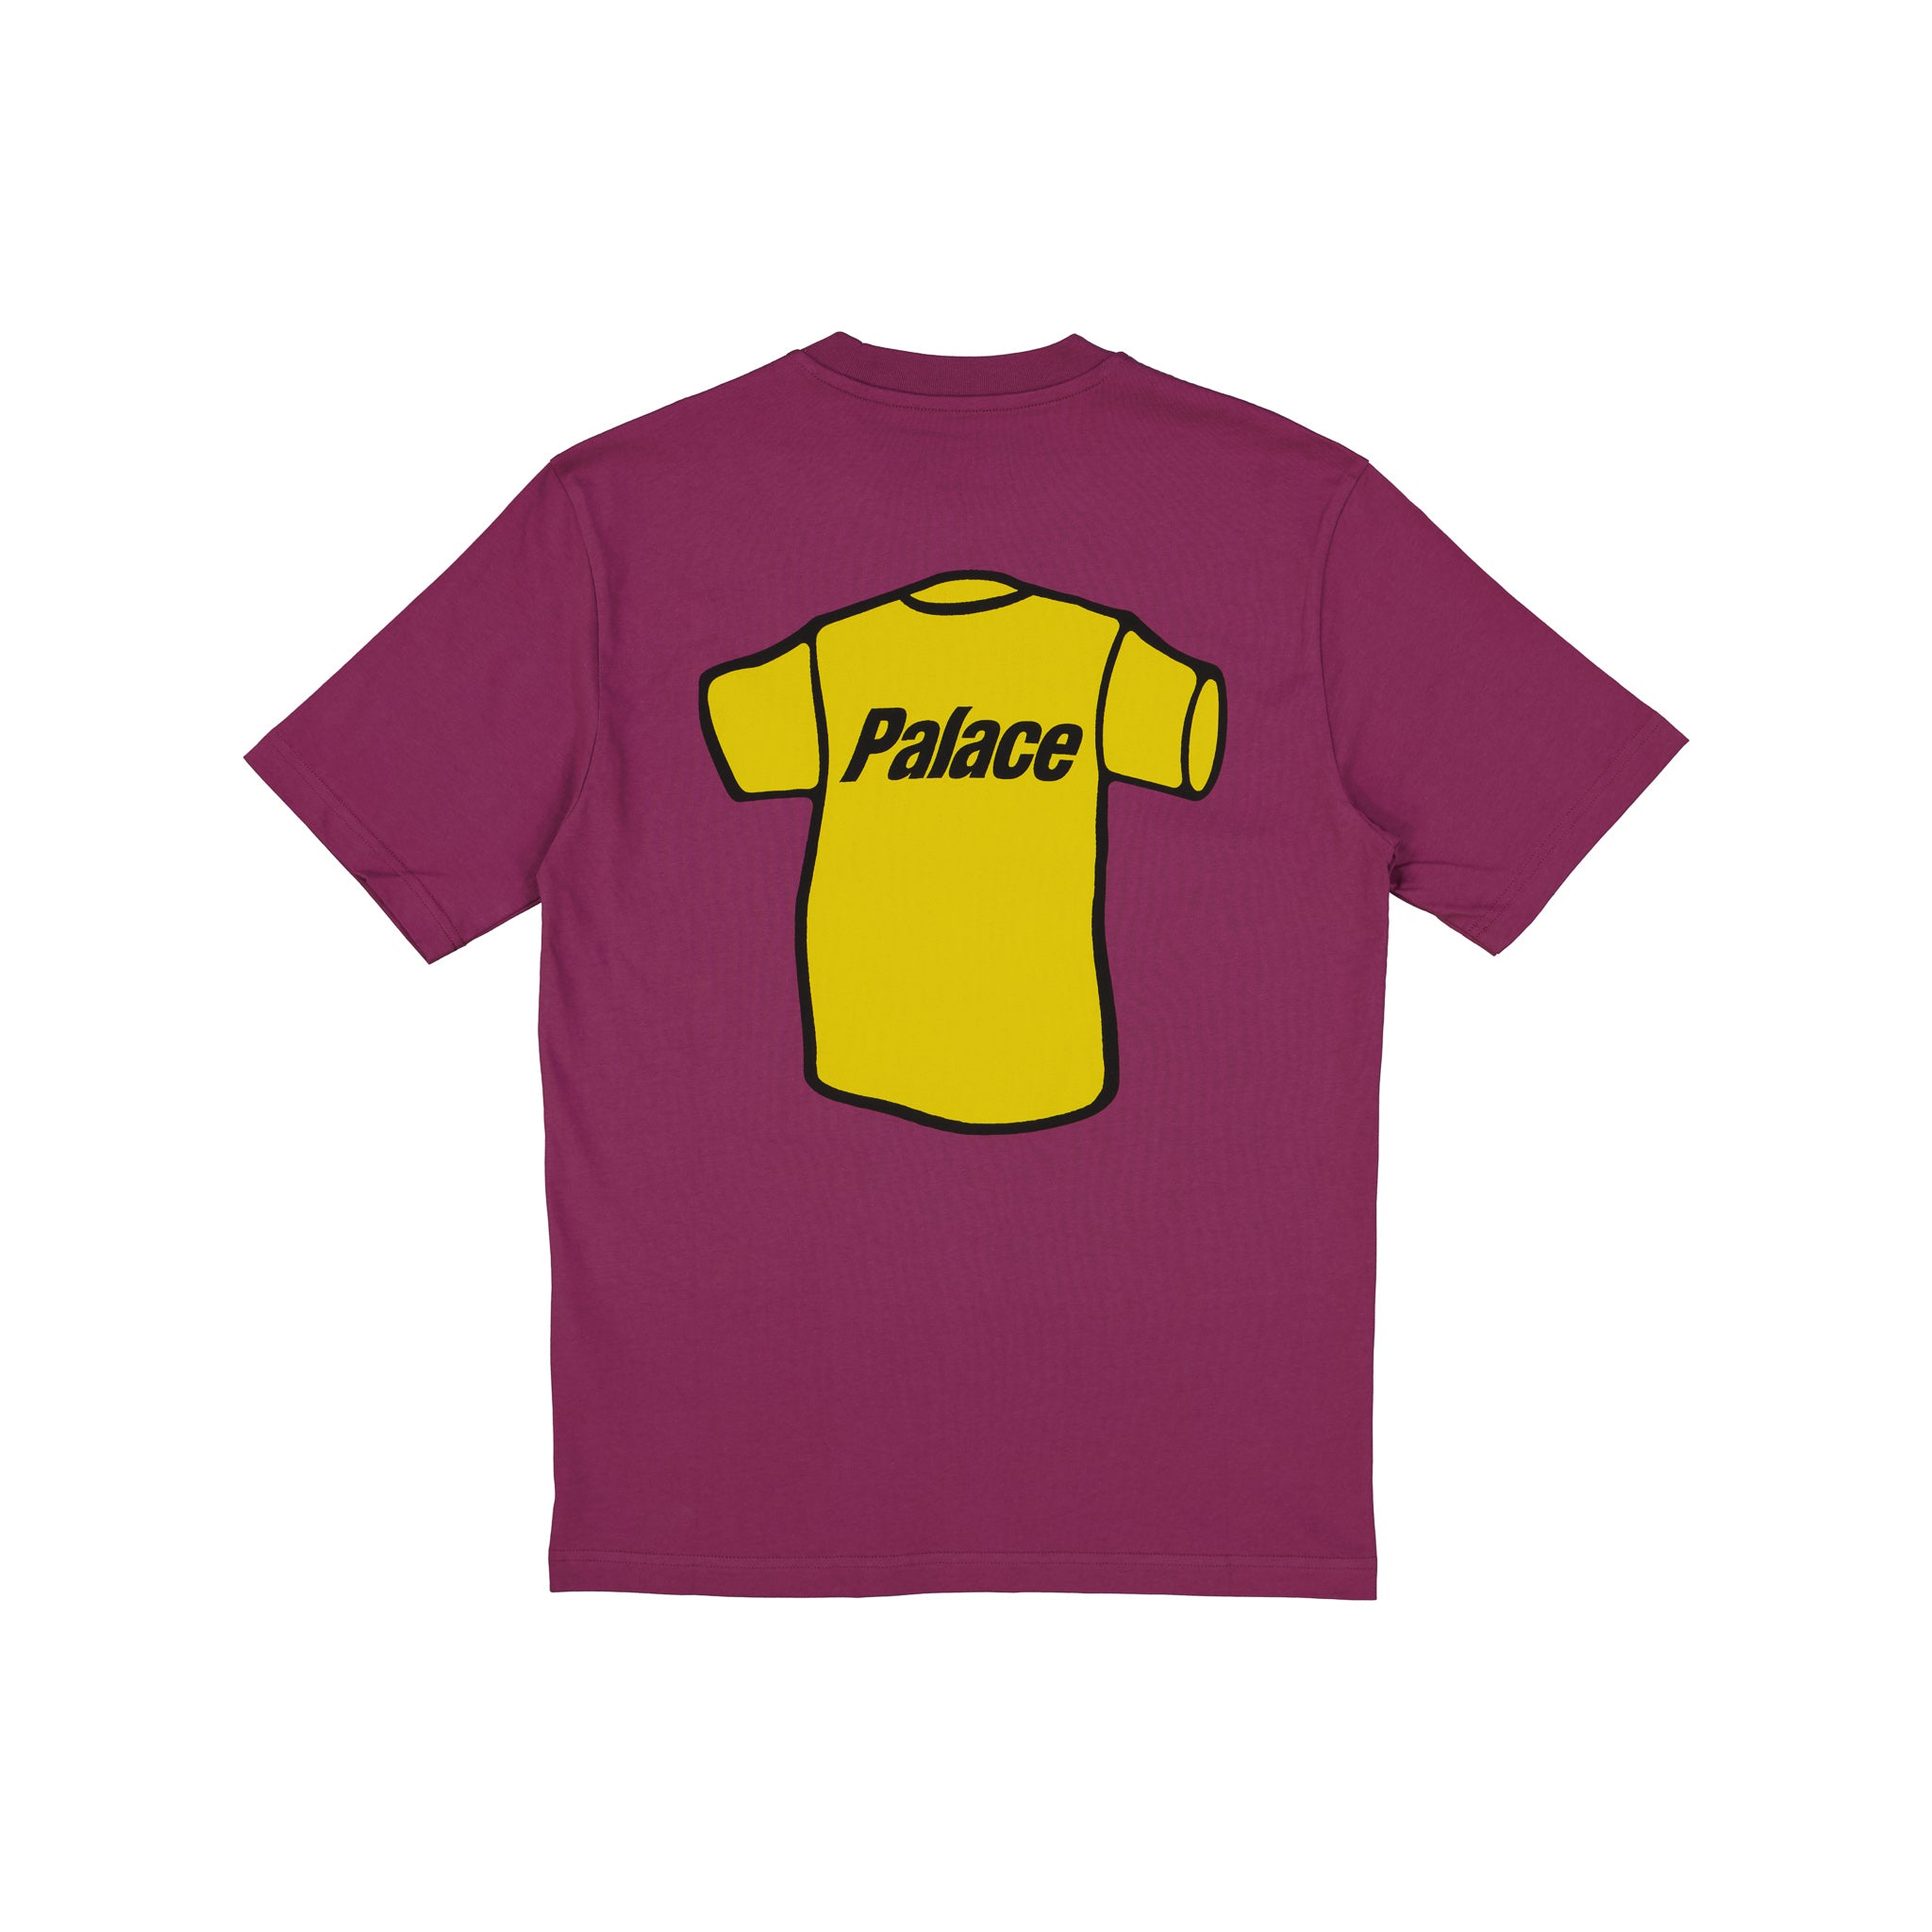 Palace T-Shirt T-Shirt Wine - SPRMRKT